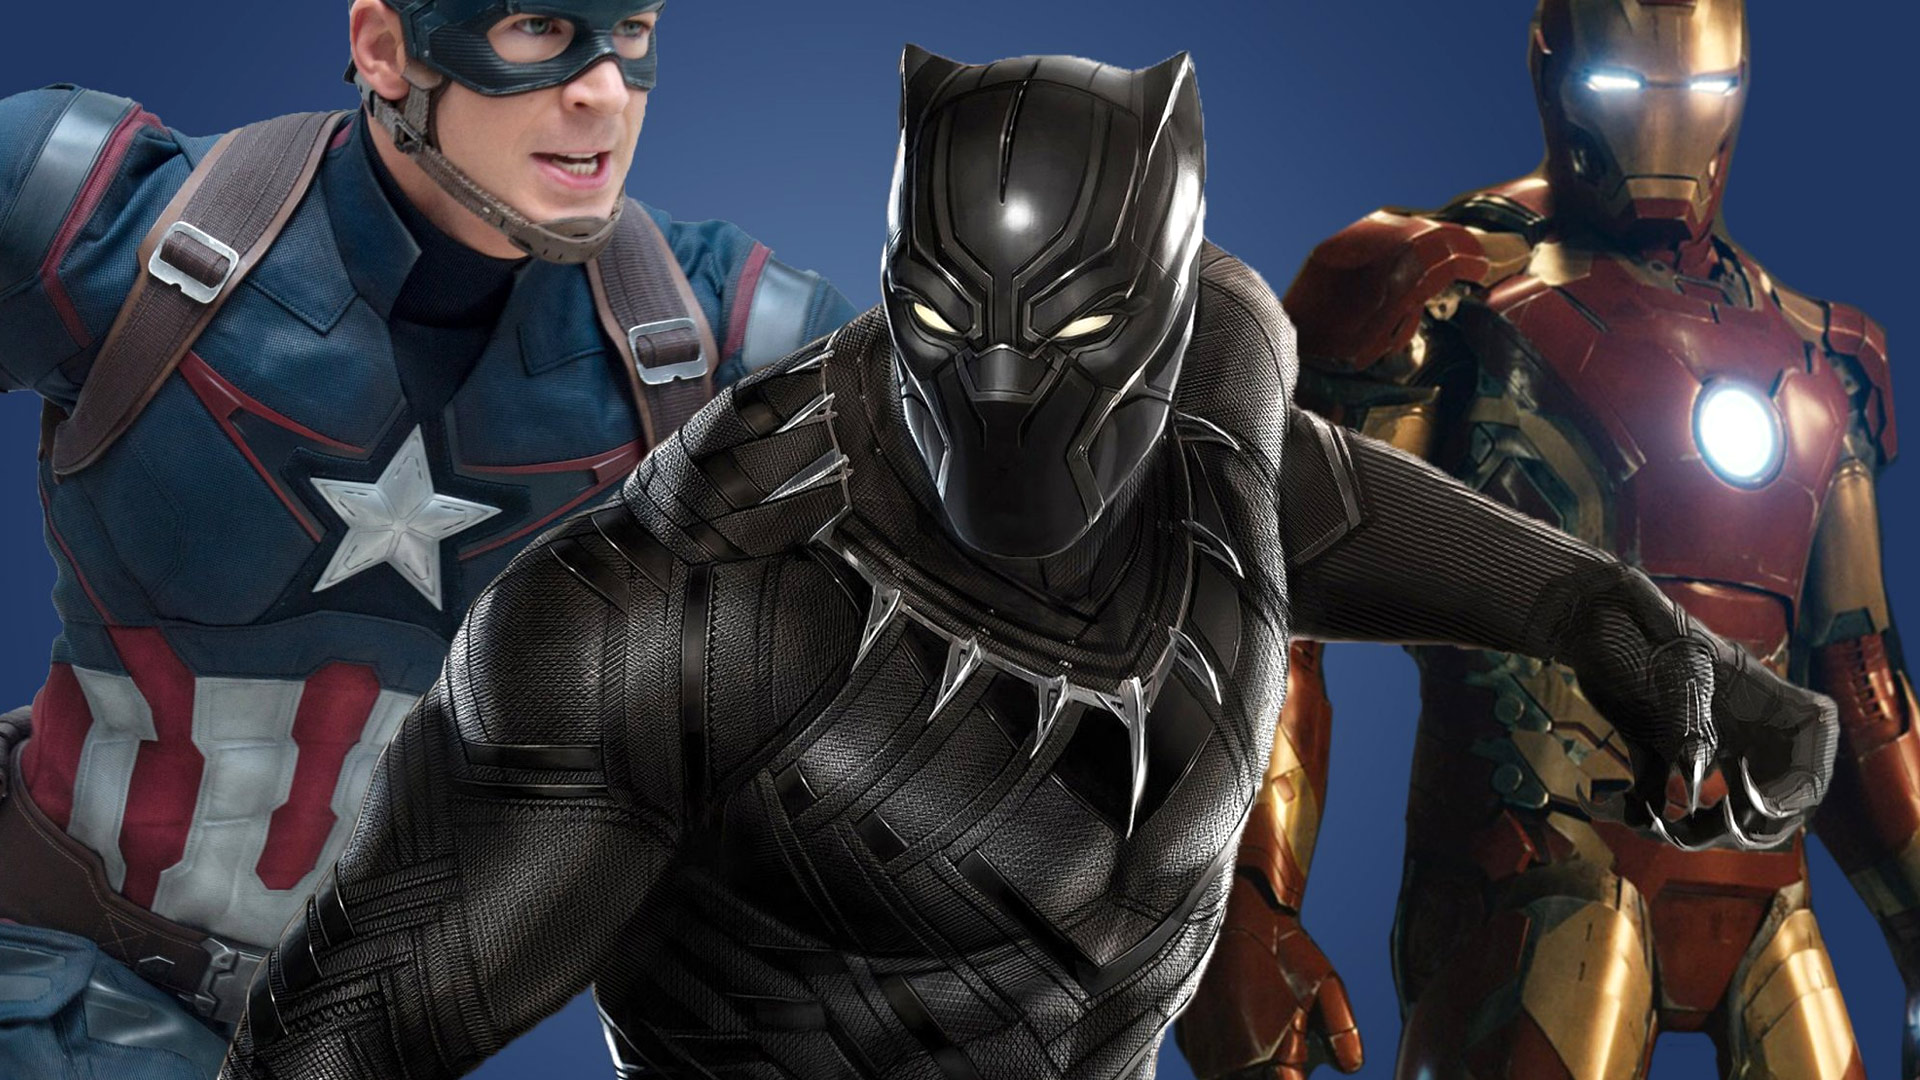 Captain America civil war black panther wallpaper – Free full hd ...